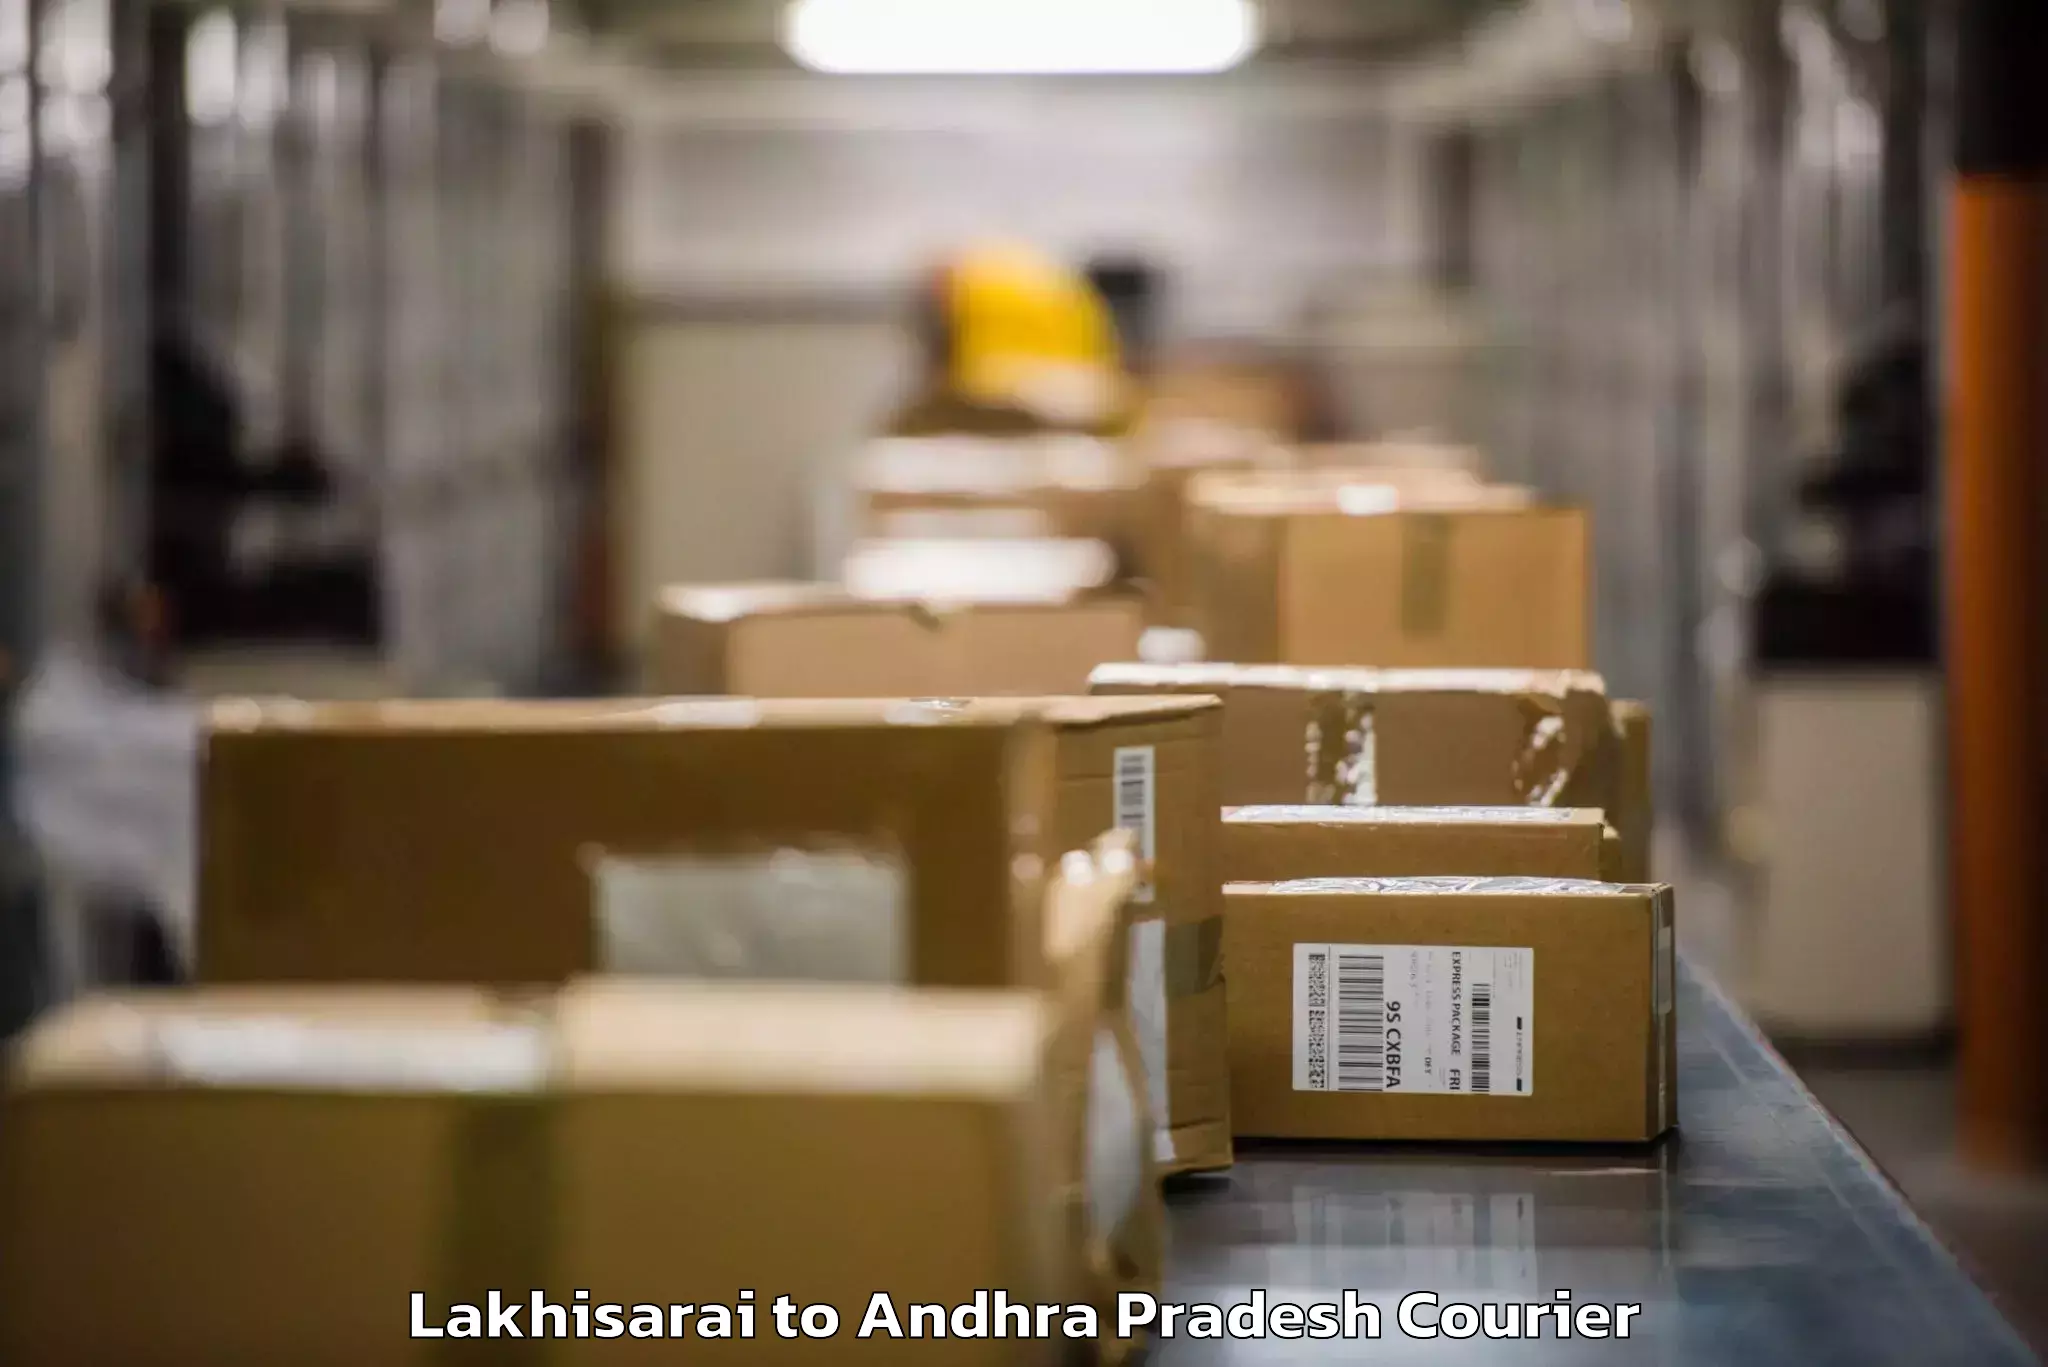 Baggage delivery estimate Lakhisarai to Samalkot